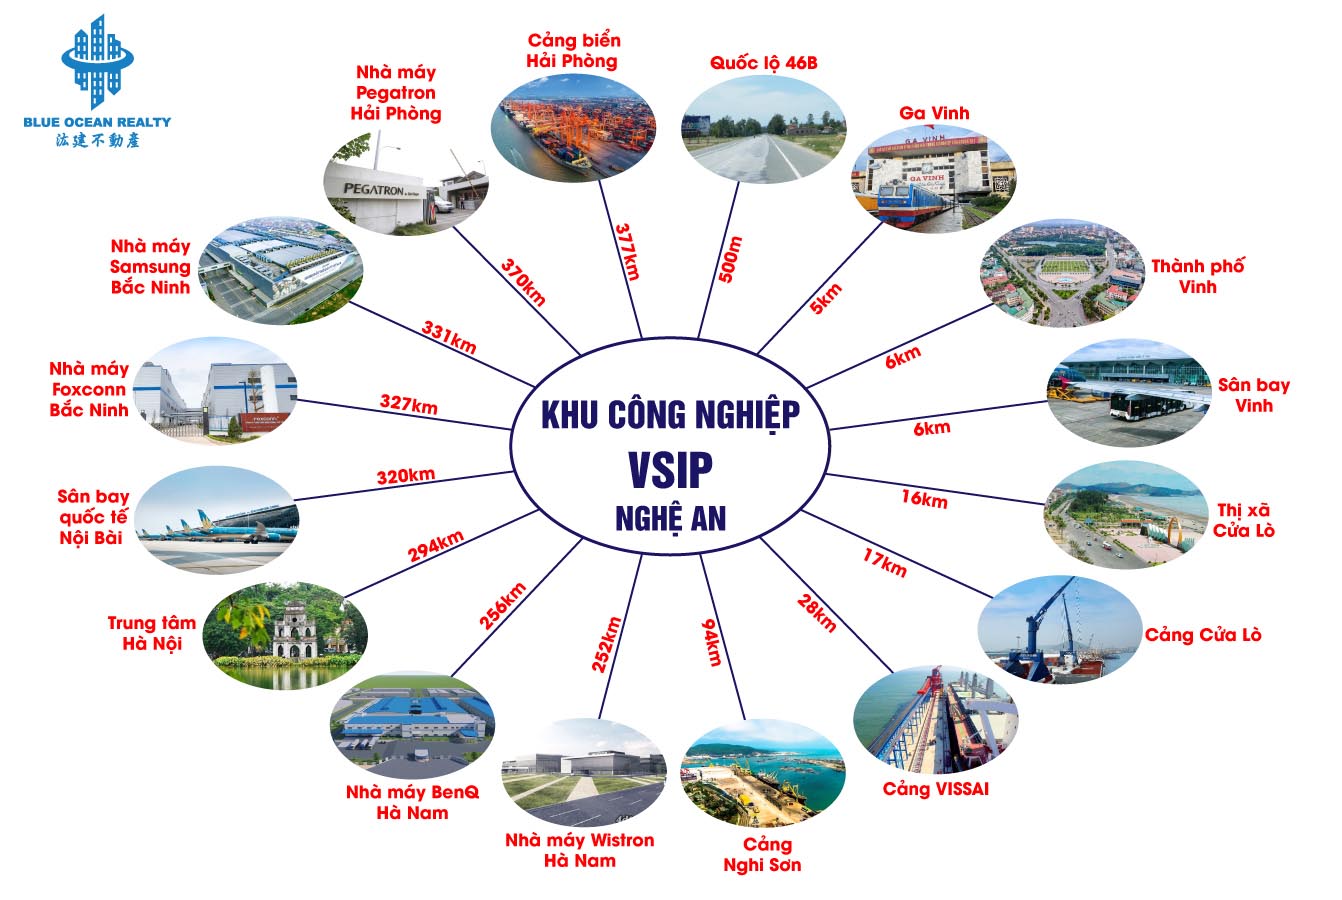 Khu công nghiệp (KCN) VSIP tỉnh Nghệ An